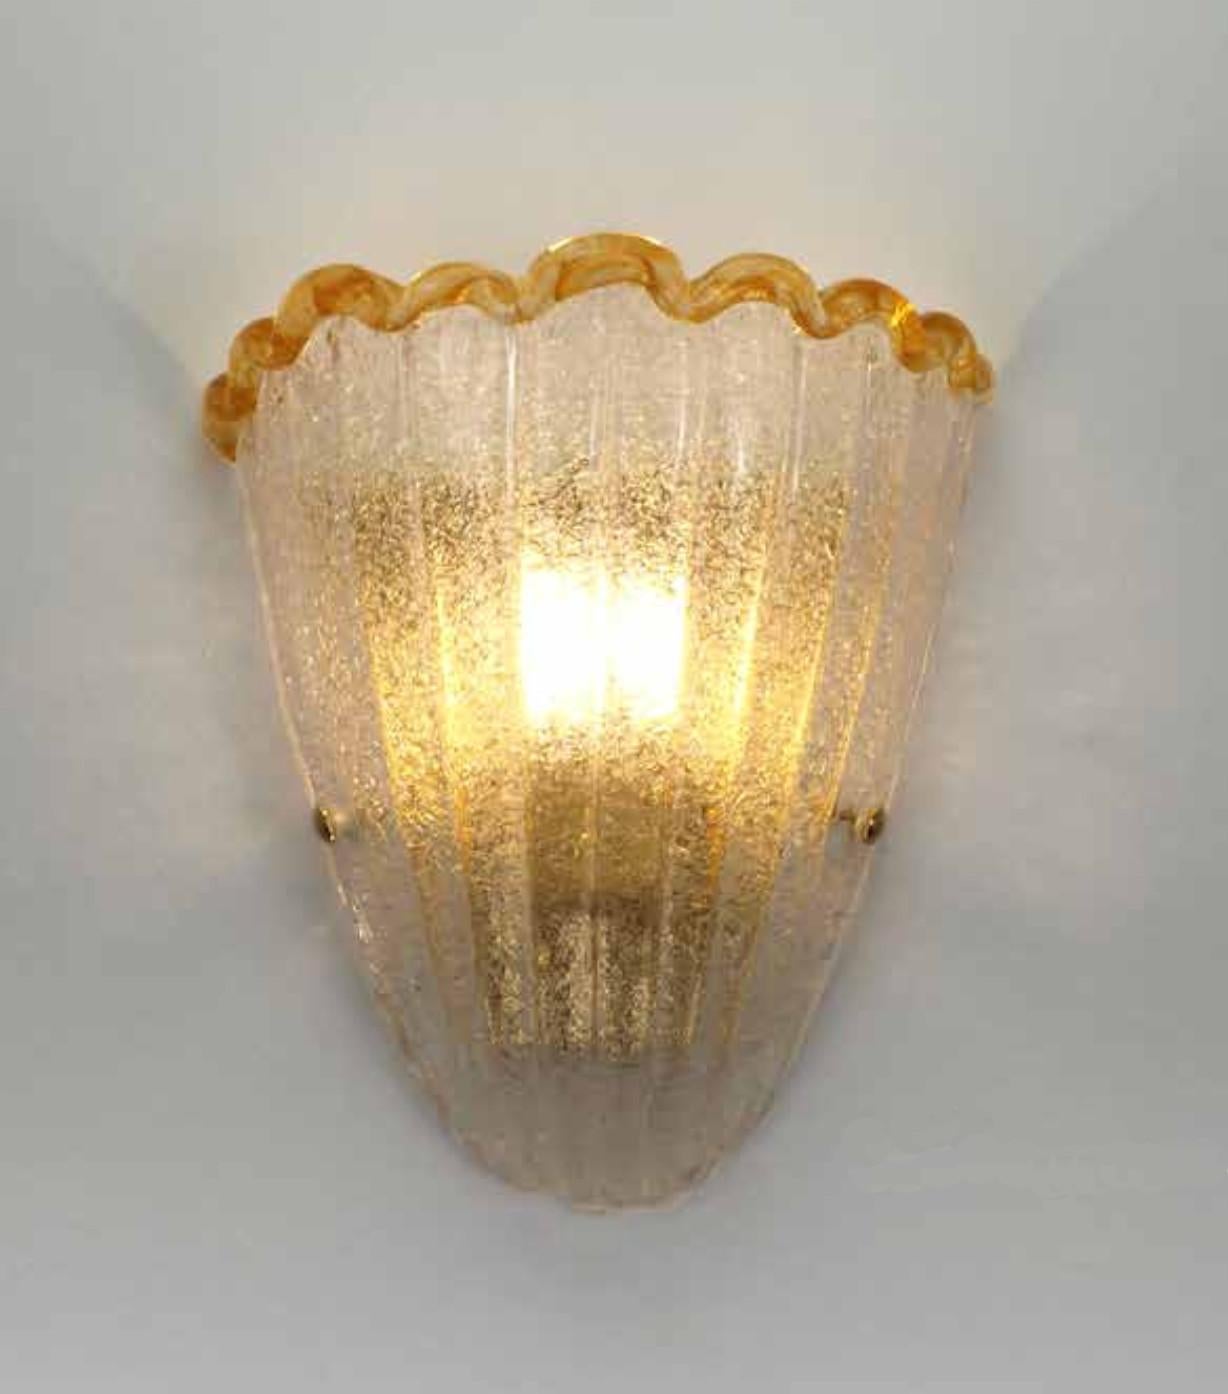 Italienische Wandleuchte mit einem Schild aus Murano-Glas, mundgeblasen in Graniglia-Technik, um einen körnigen, strukturierten Effekt mit bernsteinfarbenem Rand zu erzeugen, montiert auf einem vergoldeten Rahmen / Made in Italy
Maße: Höhe 10 Zoll,